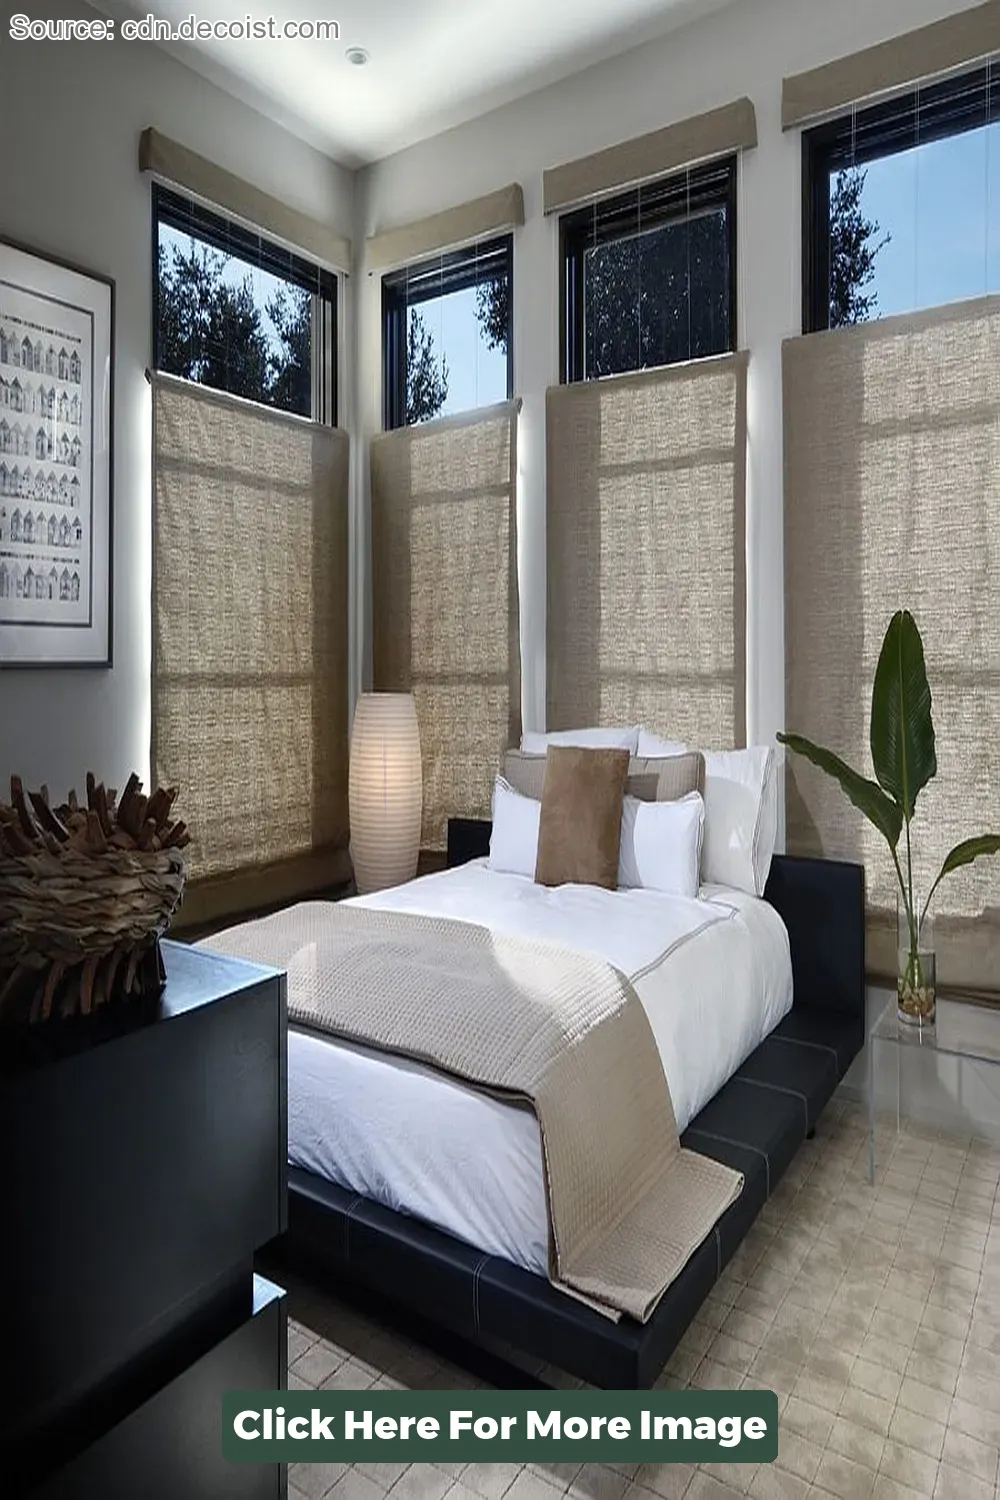 Top 40 Zen Room Design - CivilDetail